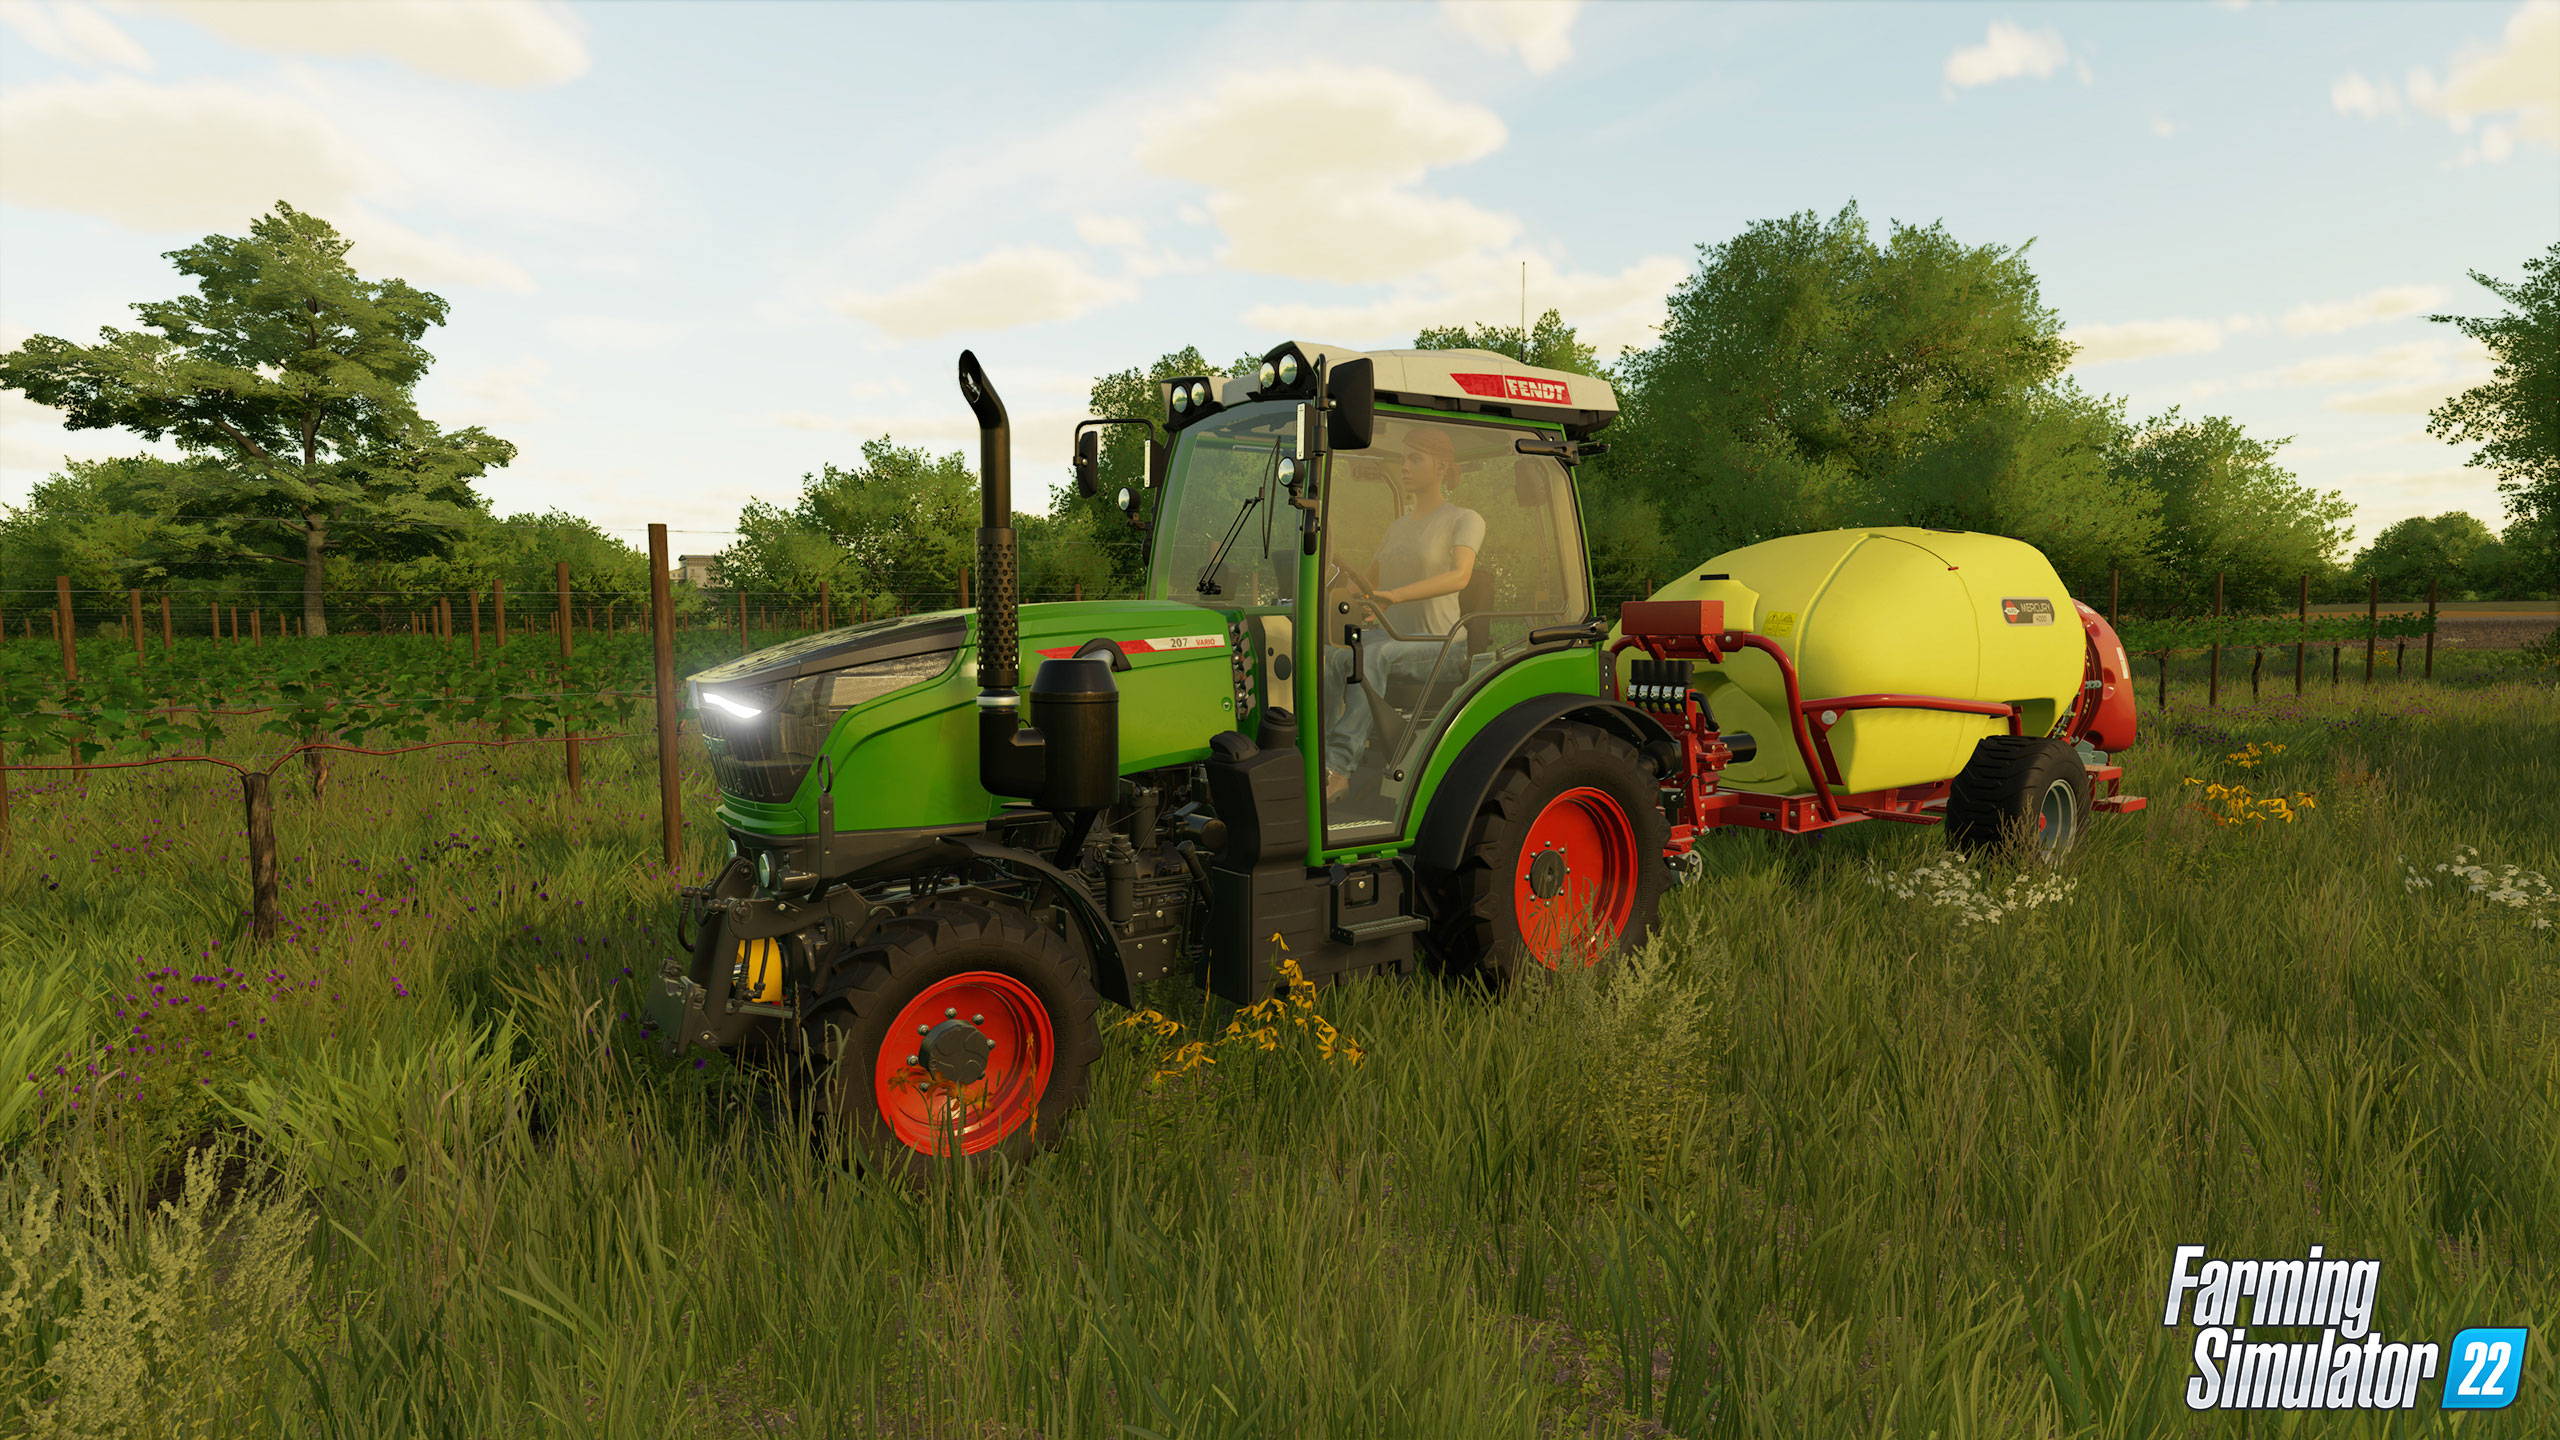 Anteprima di Farming Simulator 22: Nuove colture 